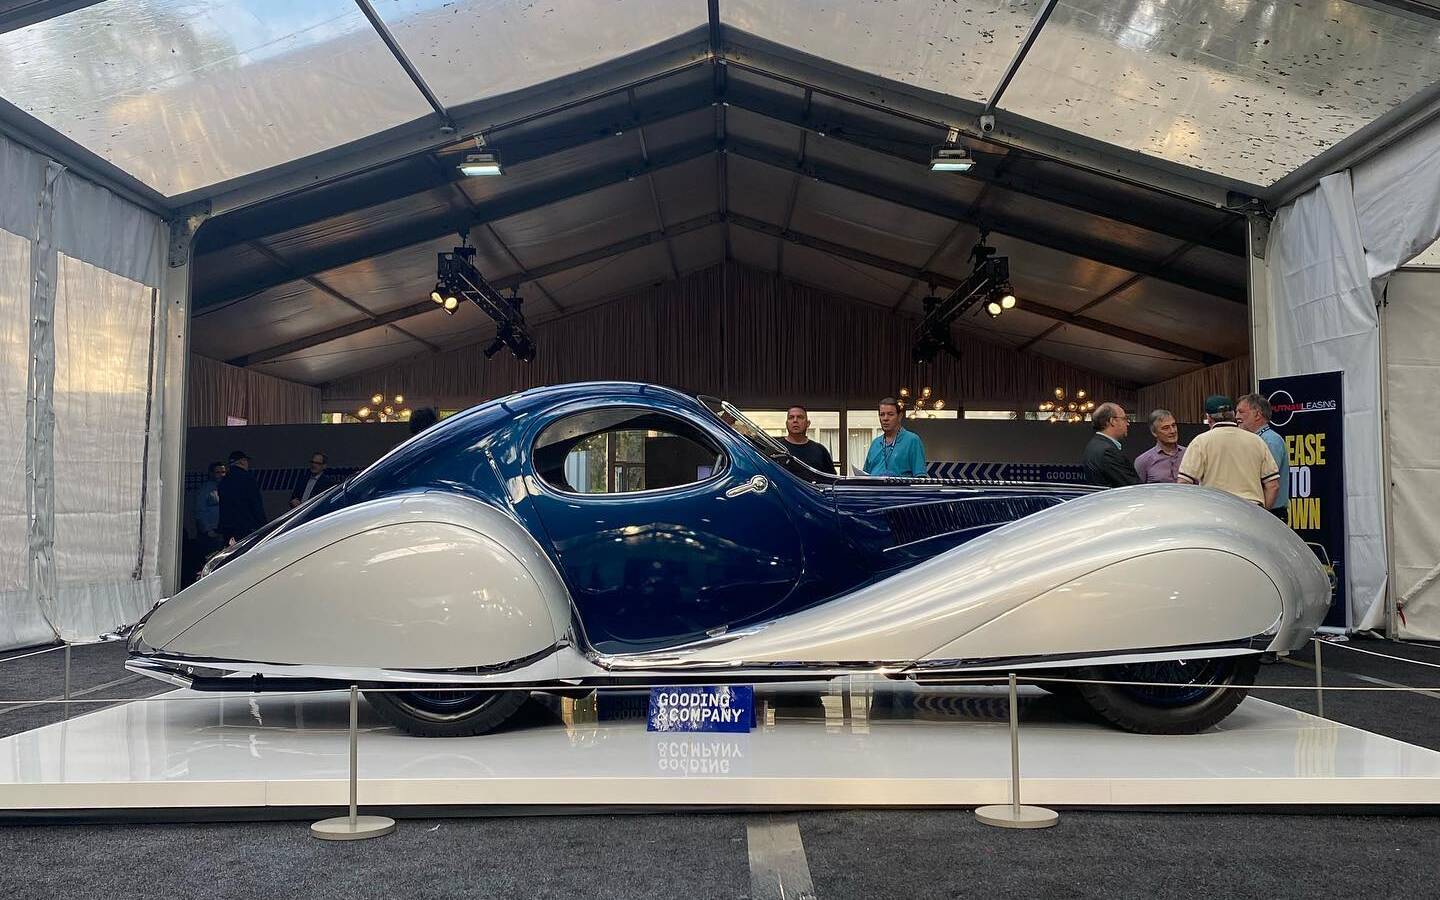 Une sublime Talbot-Lago de 1937 vendue pour 17 M$ à l’encan 514945-une-sublime-talbot-lago-de-1937-vendue-pour-17m-a-l-encan